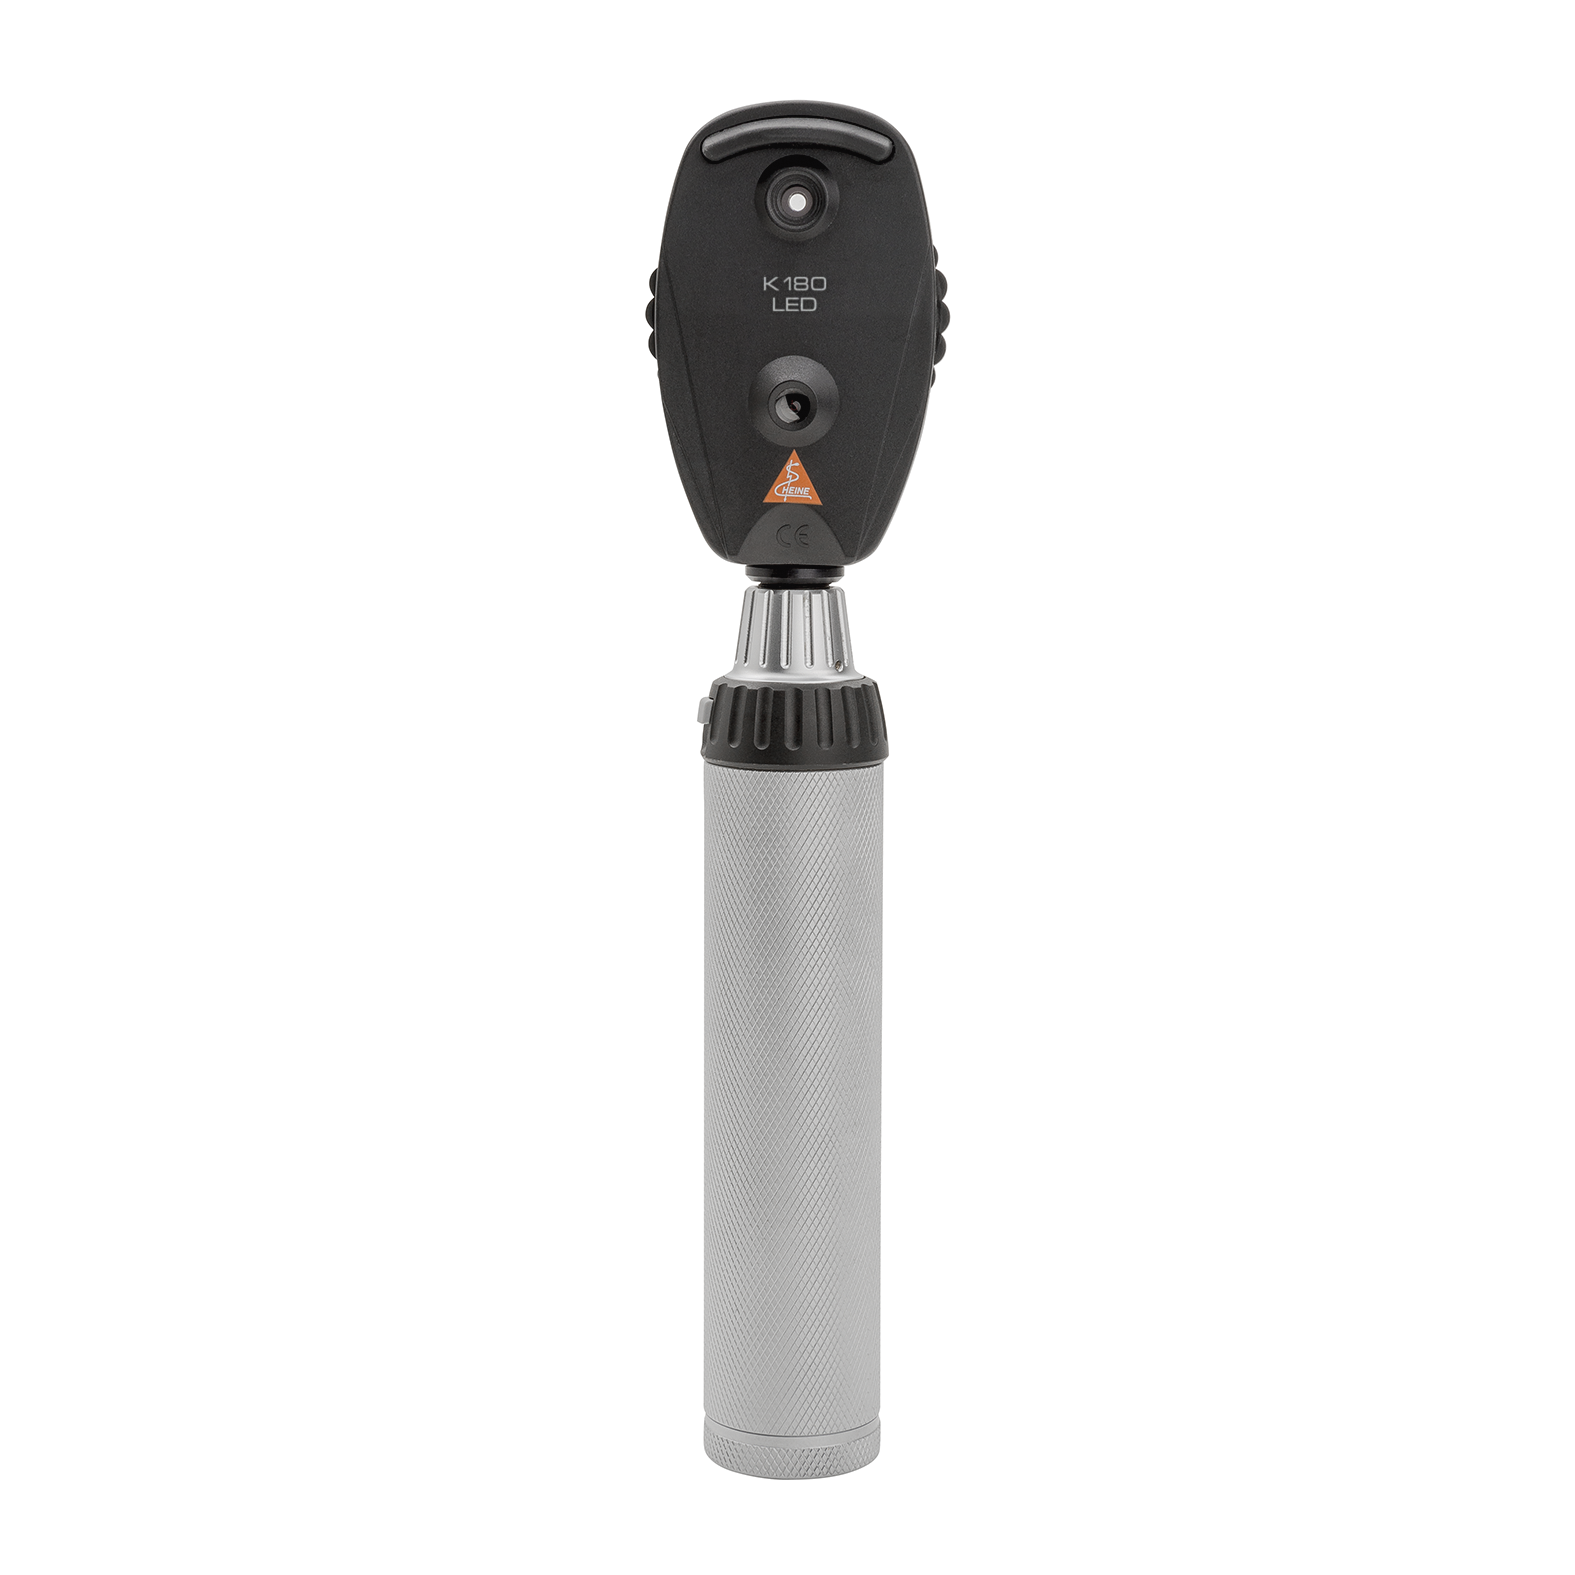 Oftalmoscopio HEINE K180, in versione standard con rotella di apertura 1, astuccio morbido, manico ricaricabile BETA4 USB con cavo USB e alimentatore a spina